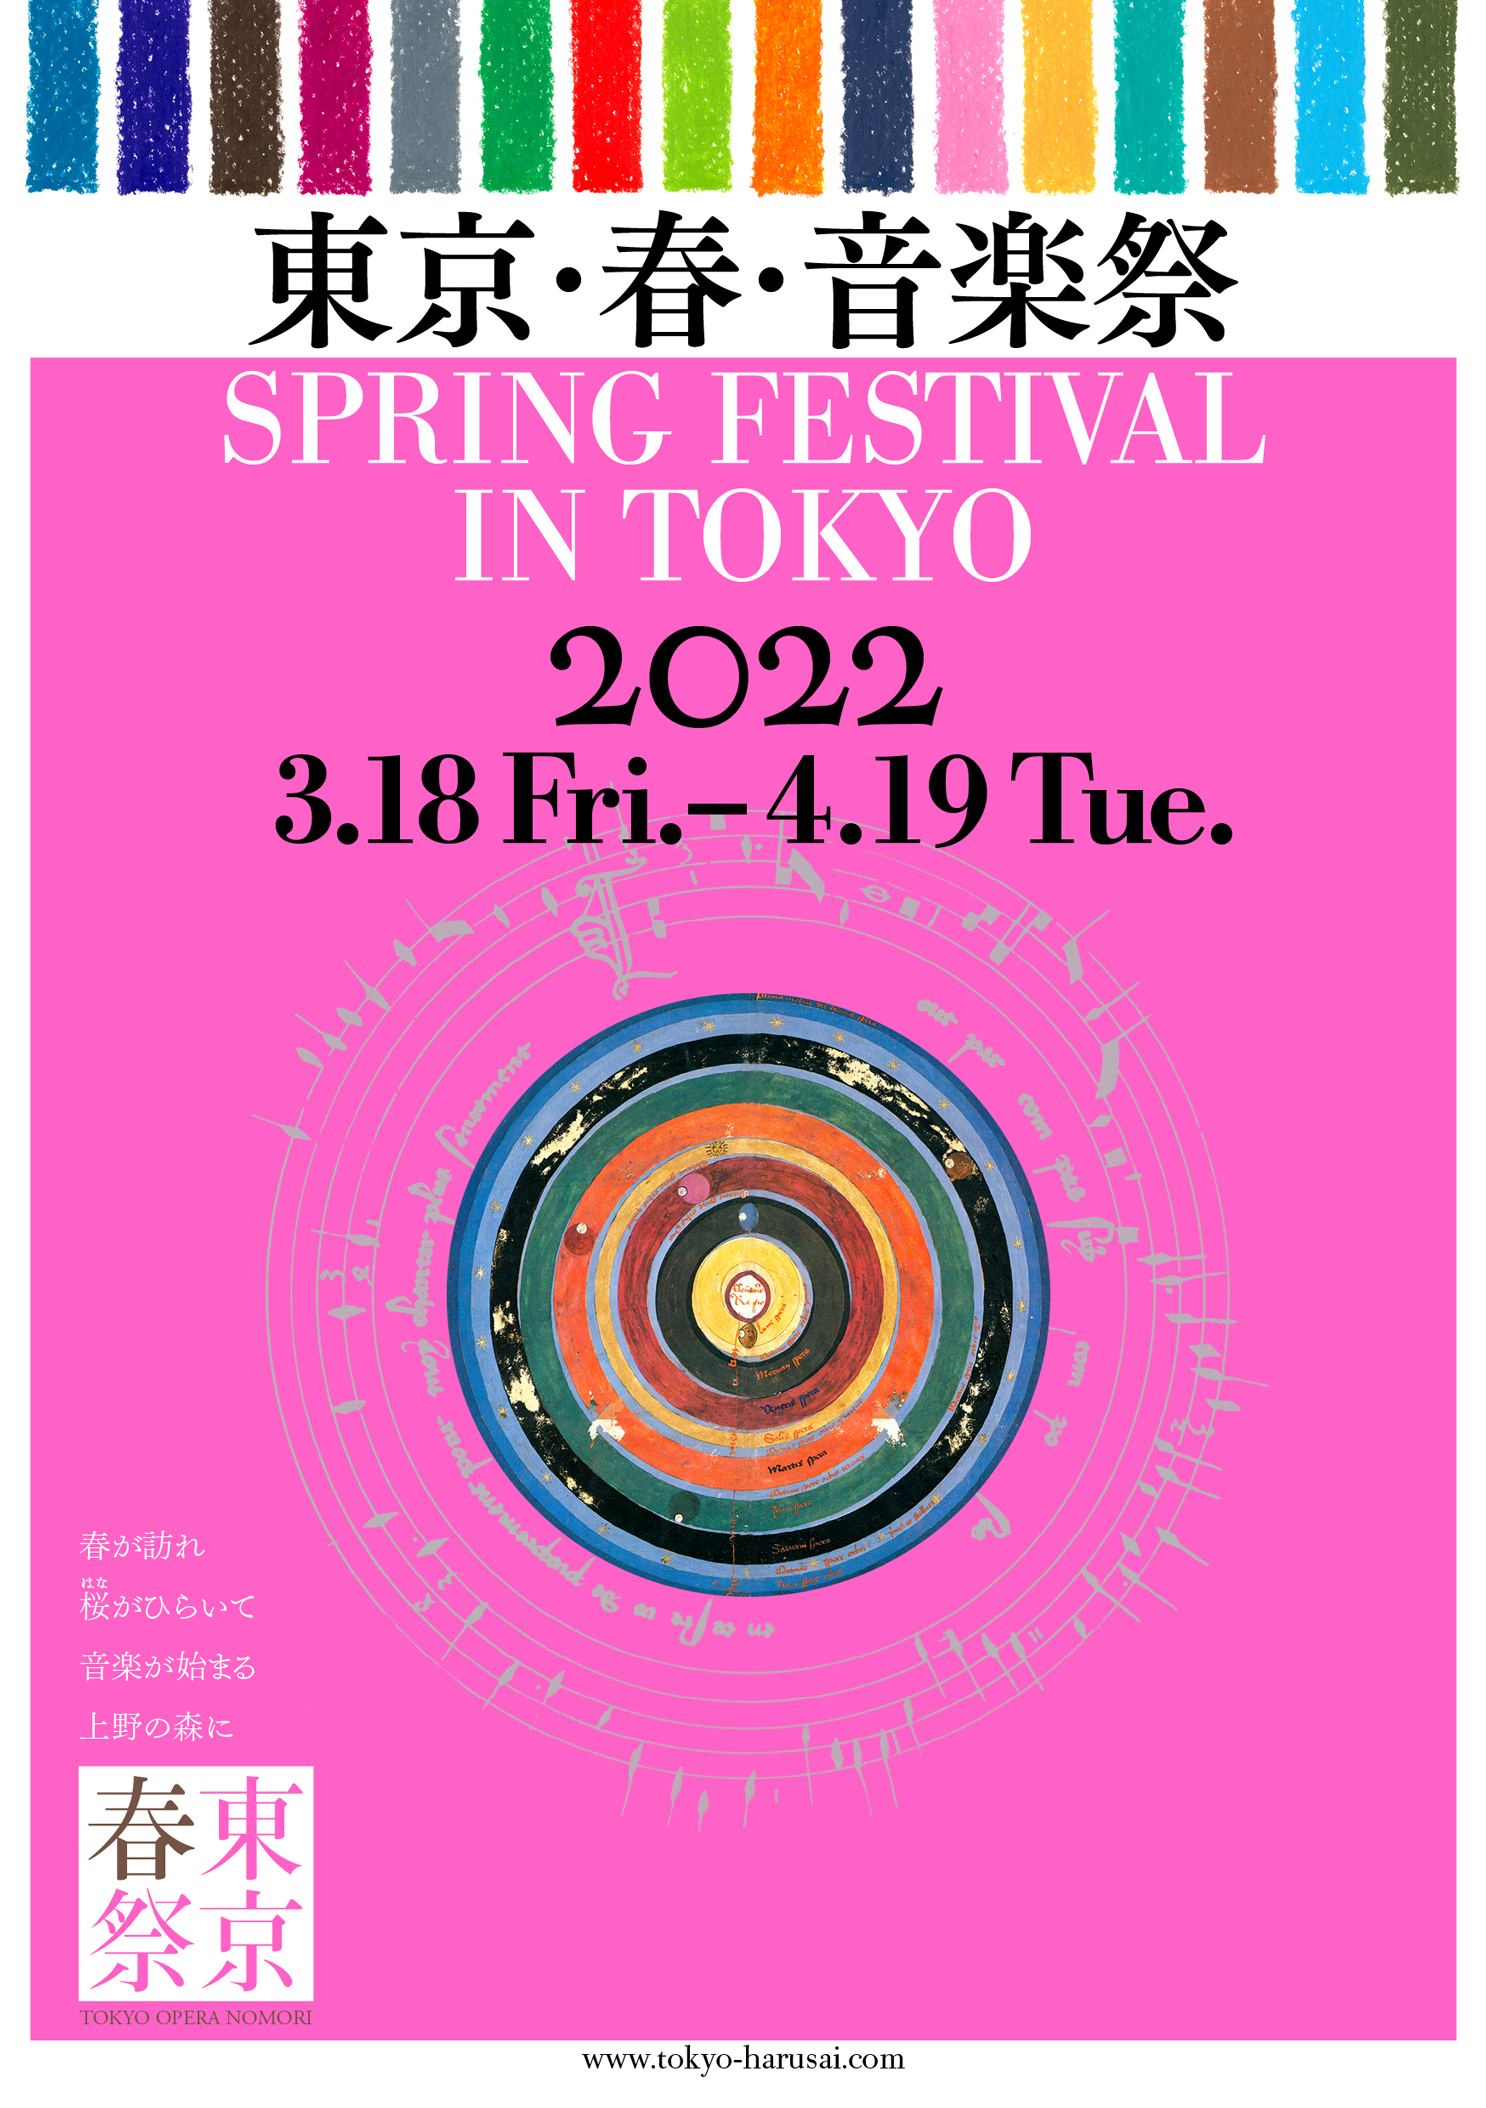 東京・春・音楽祭 2022